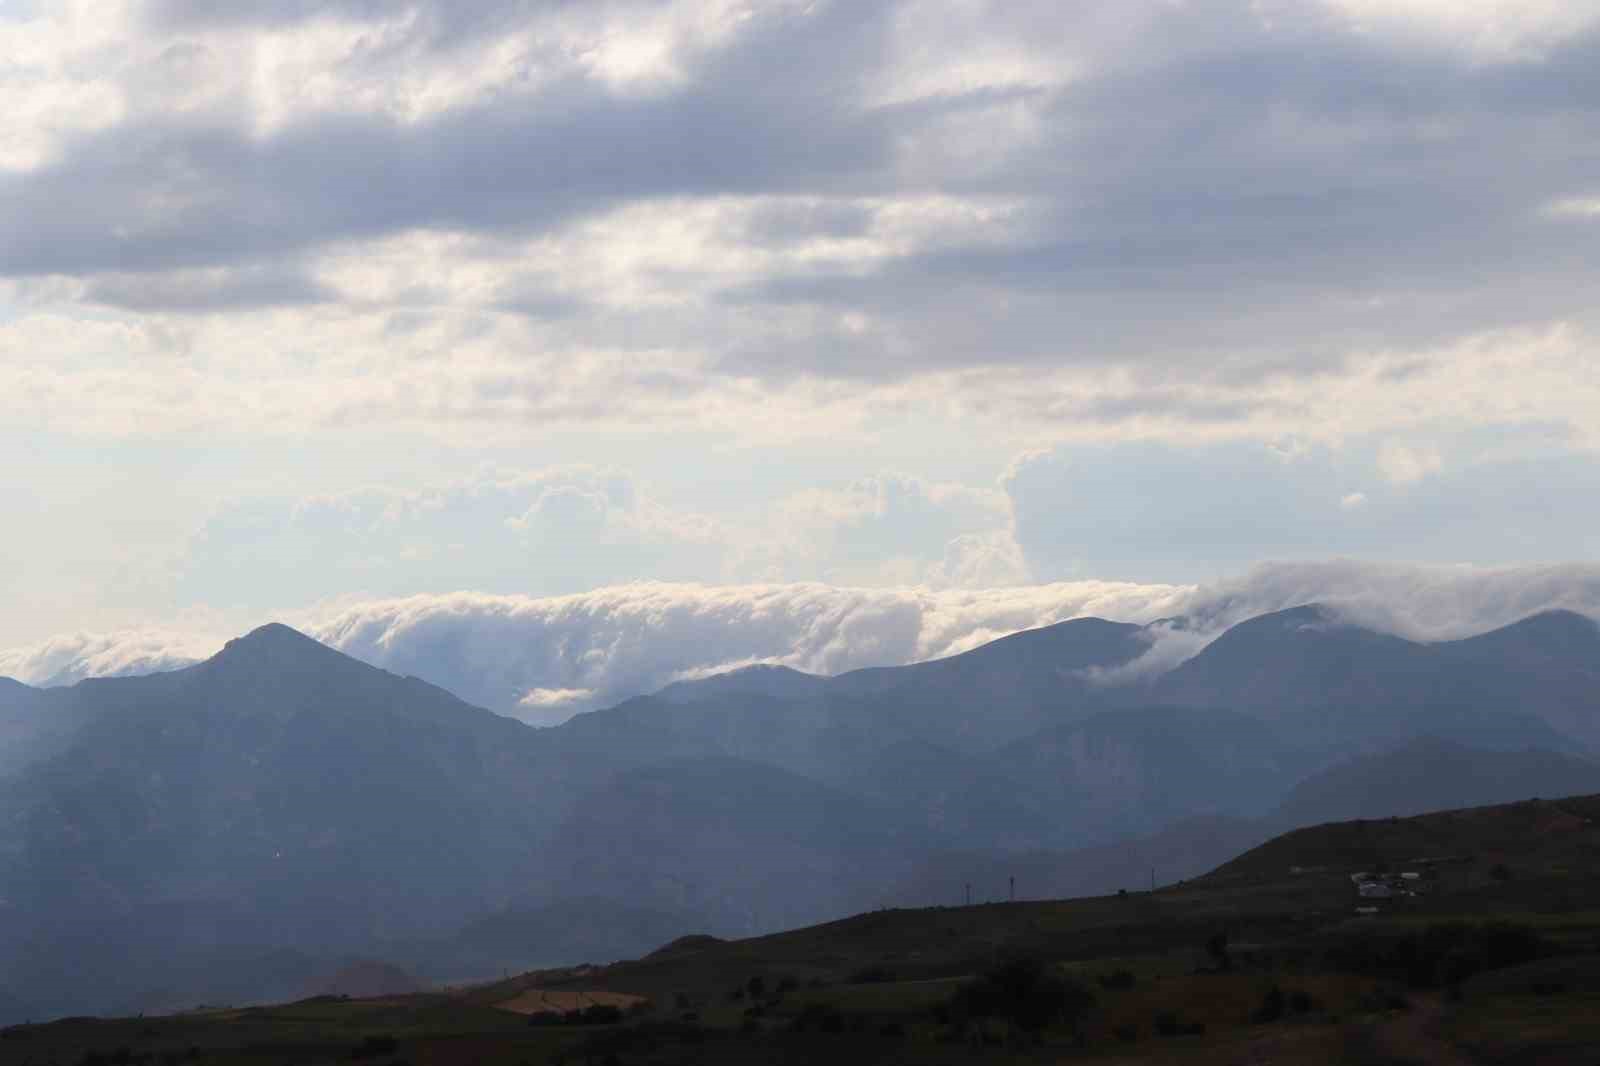 Sis bulutları Kivi Dağı’nda şelale görüntüsü oluşturdu